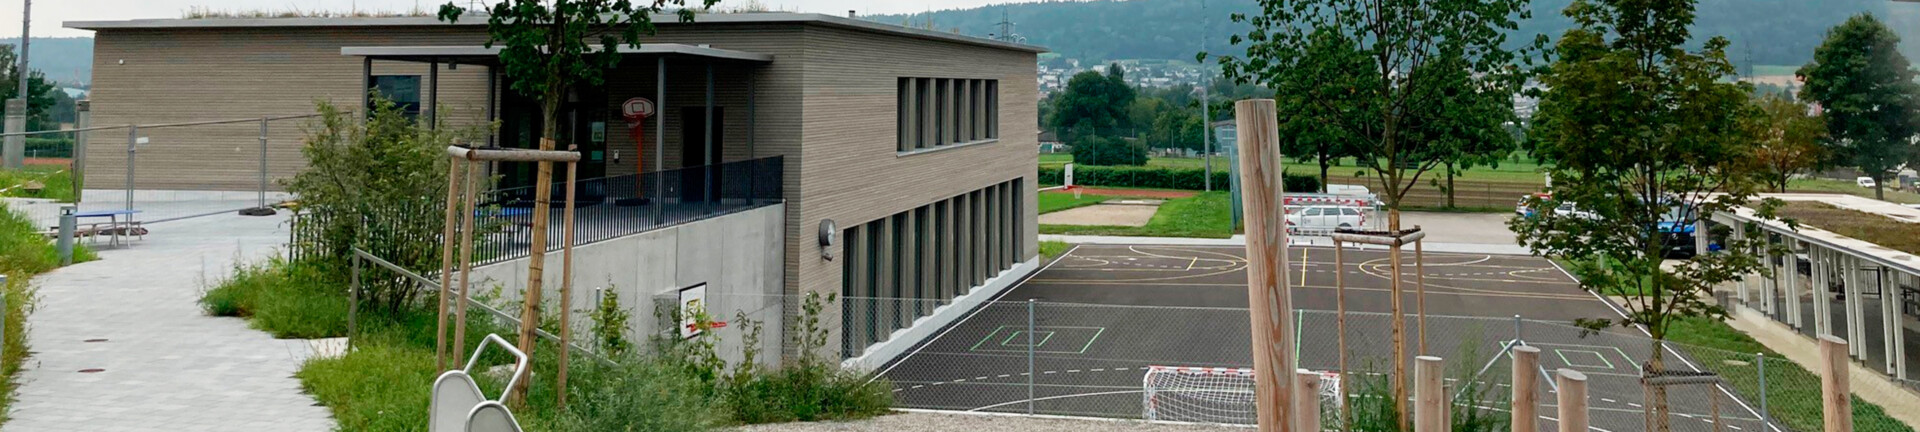 Schulhausumbau und Neubau eines Doppelkindergartens mit Sporthalle Featured Image